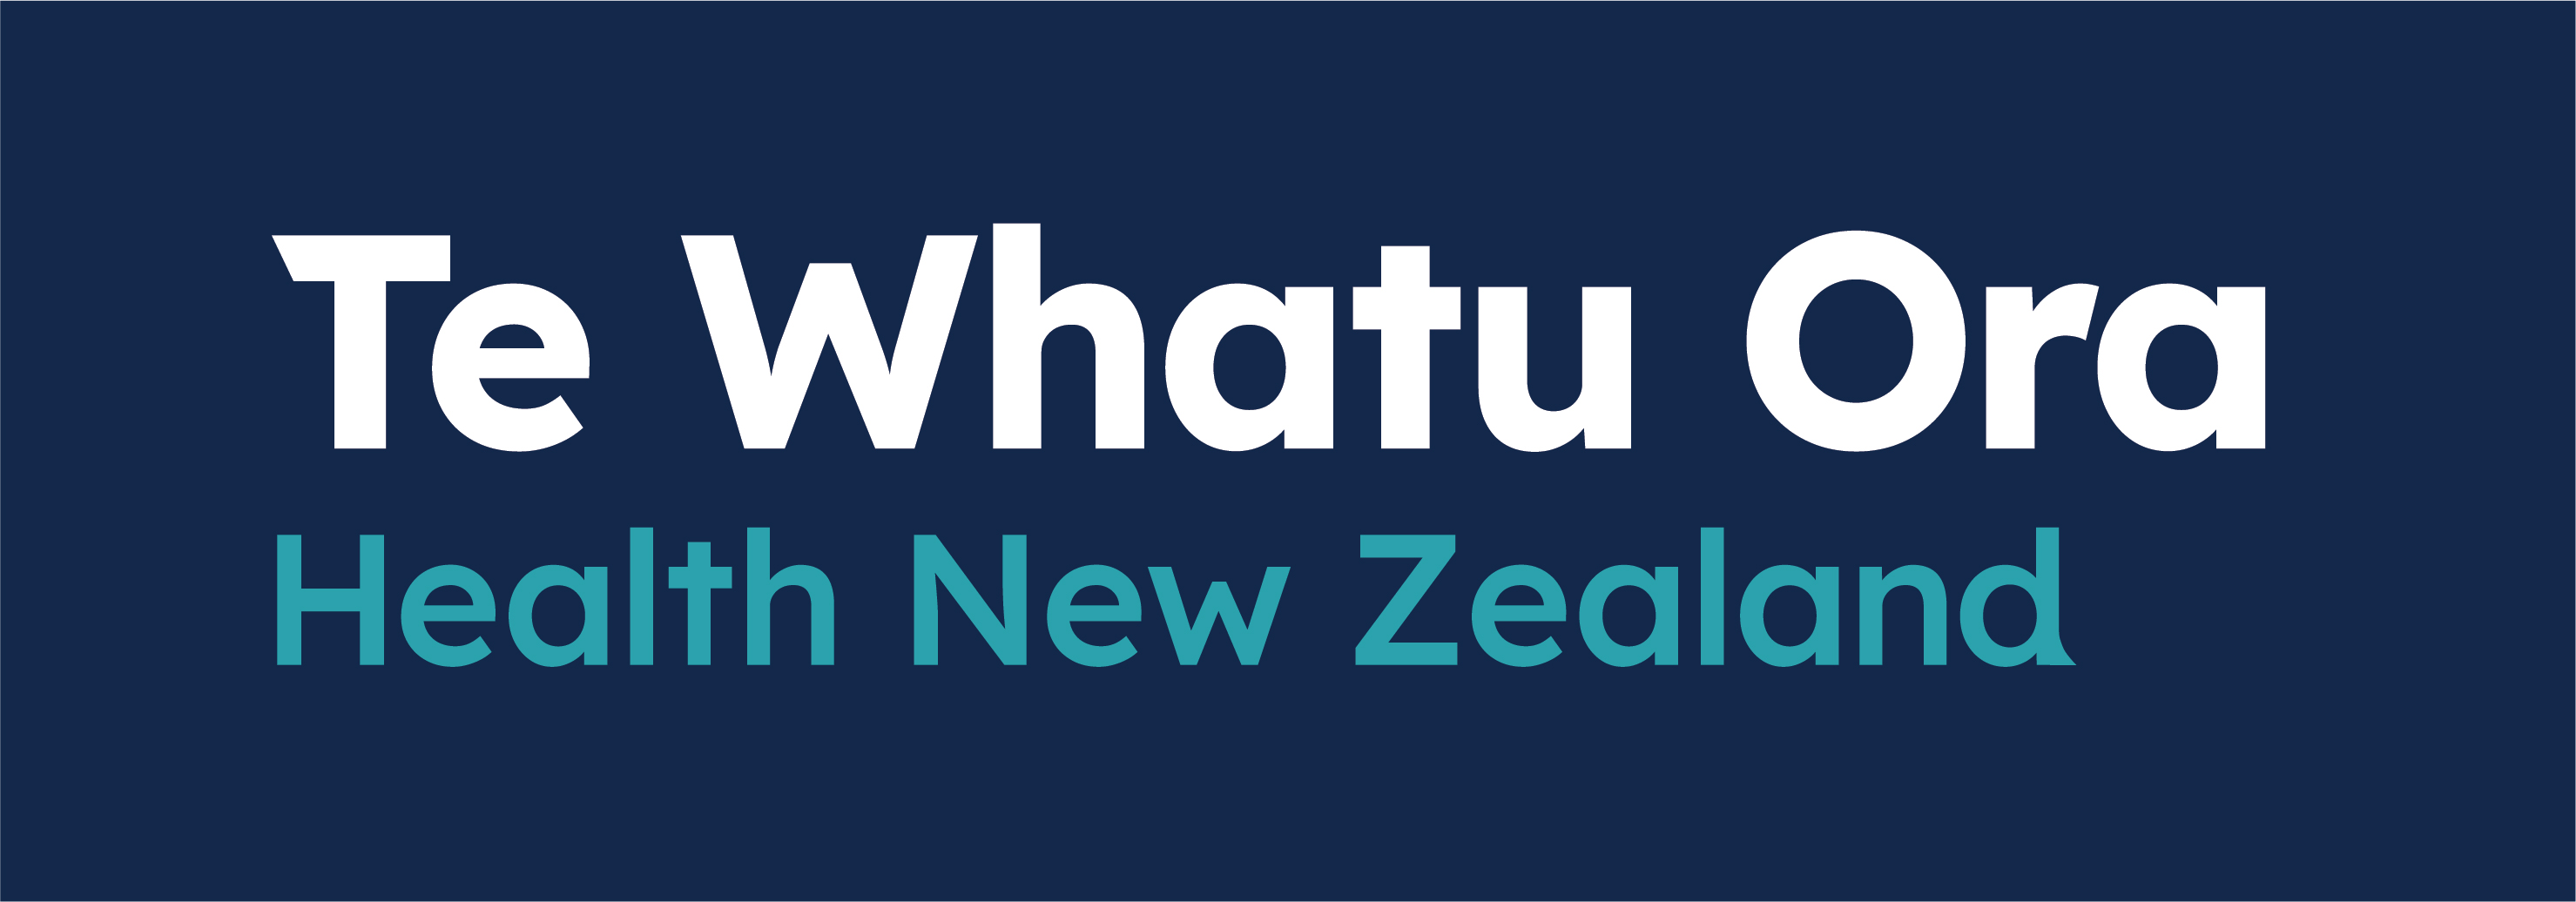 Te Whatu Ora, Health New Zealand logo